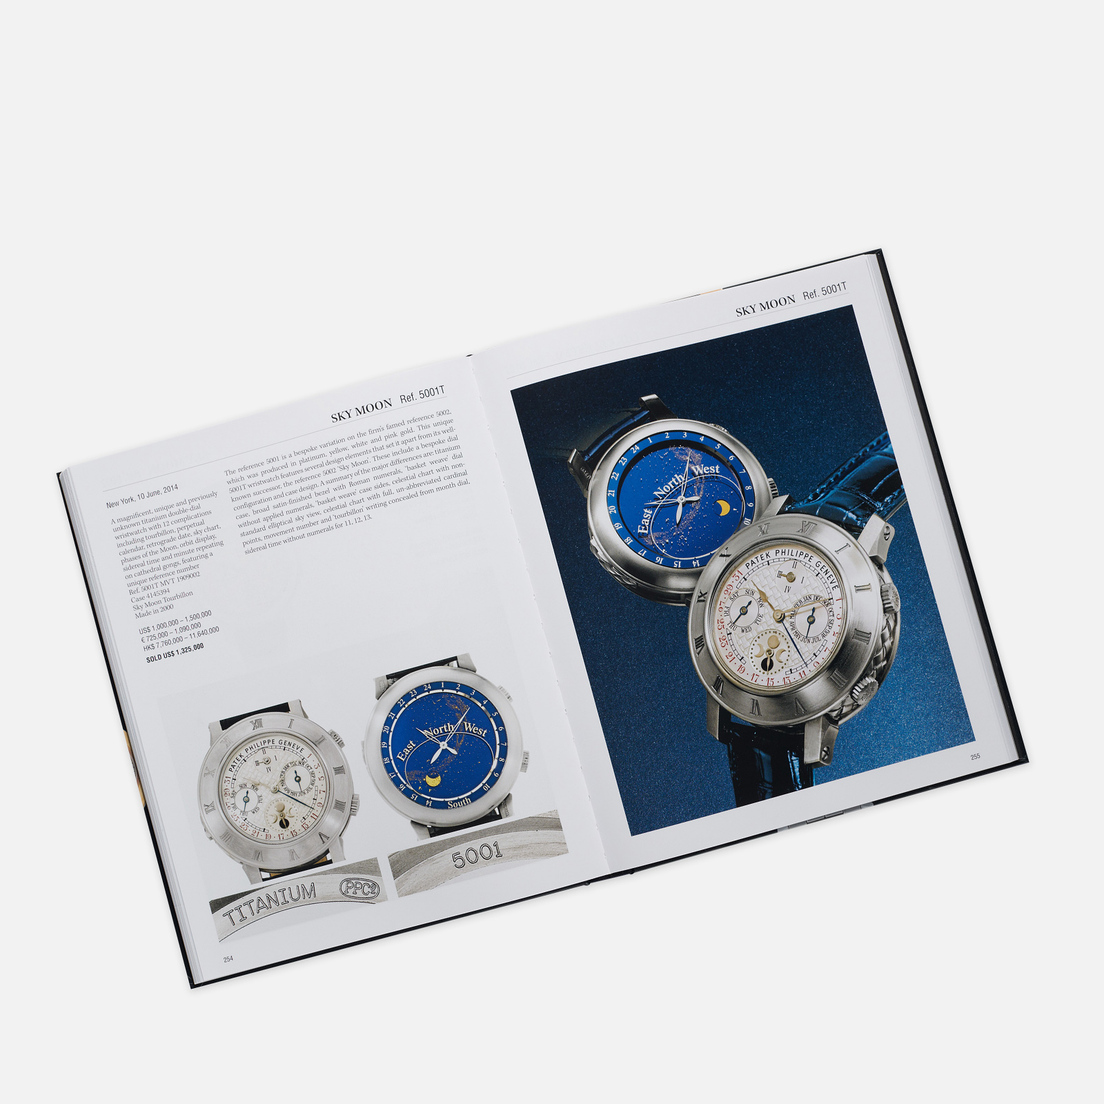 ACC Art Books Книга Patek Philippe: Investing In Wristwatches